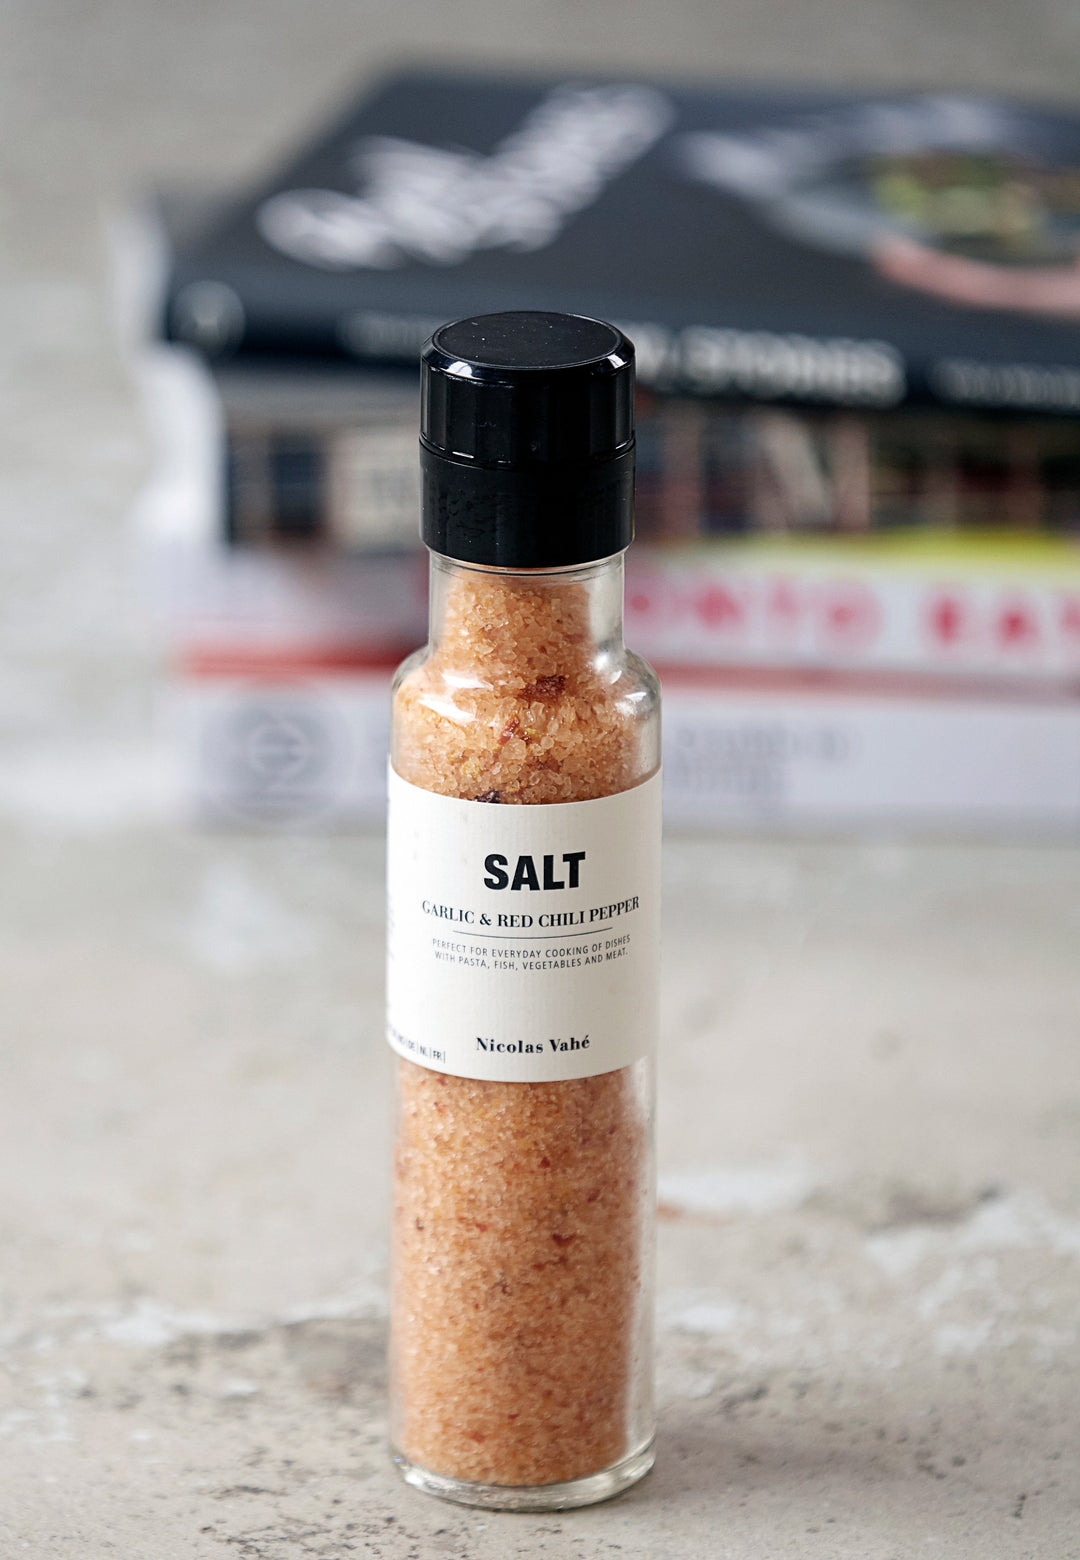 Nicolas Vahe - Salt, Garlic & Red Chili Pepper Salt 